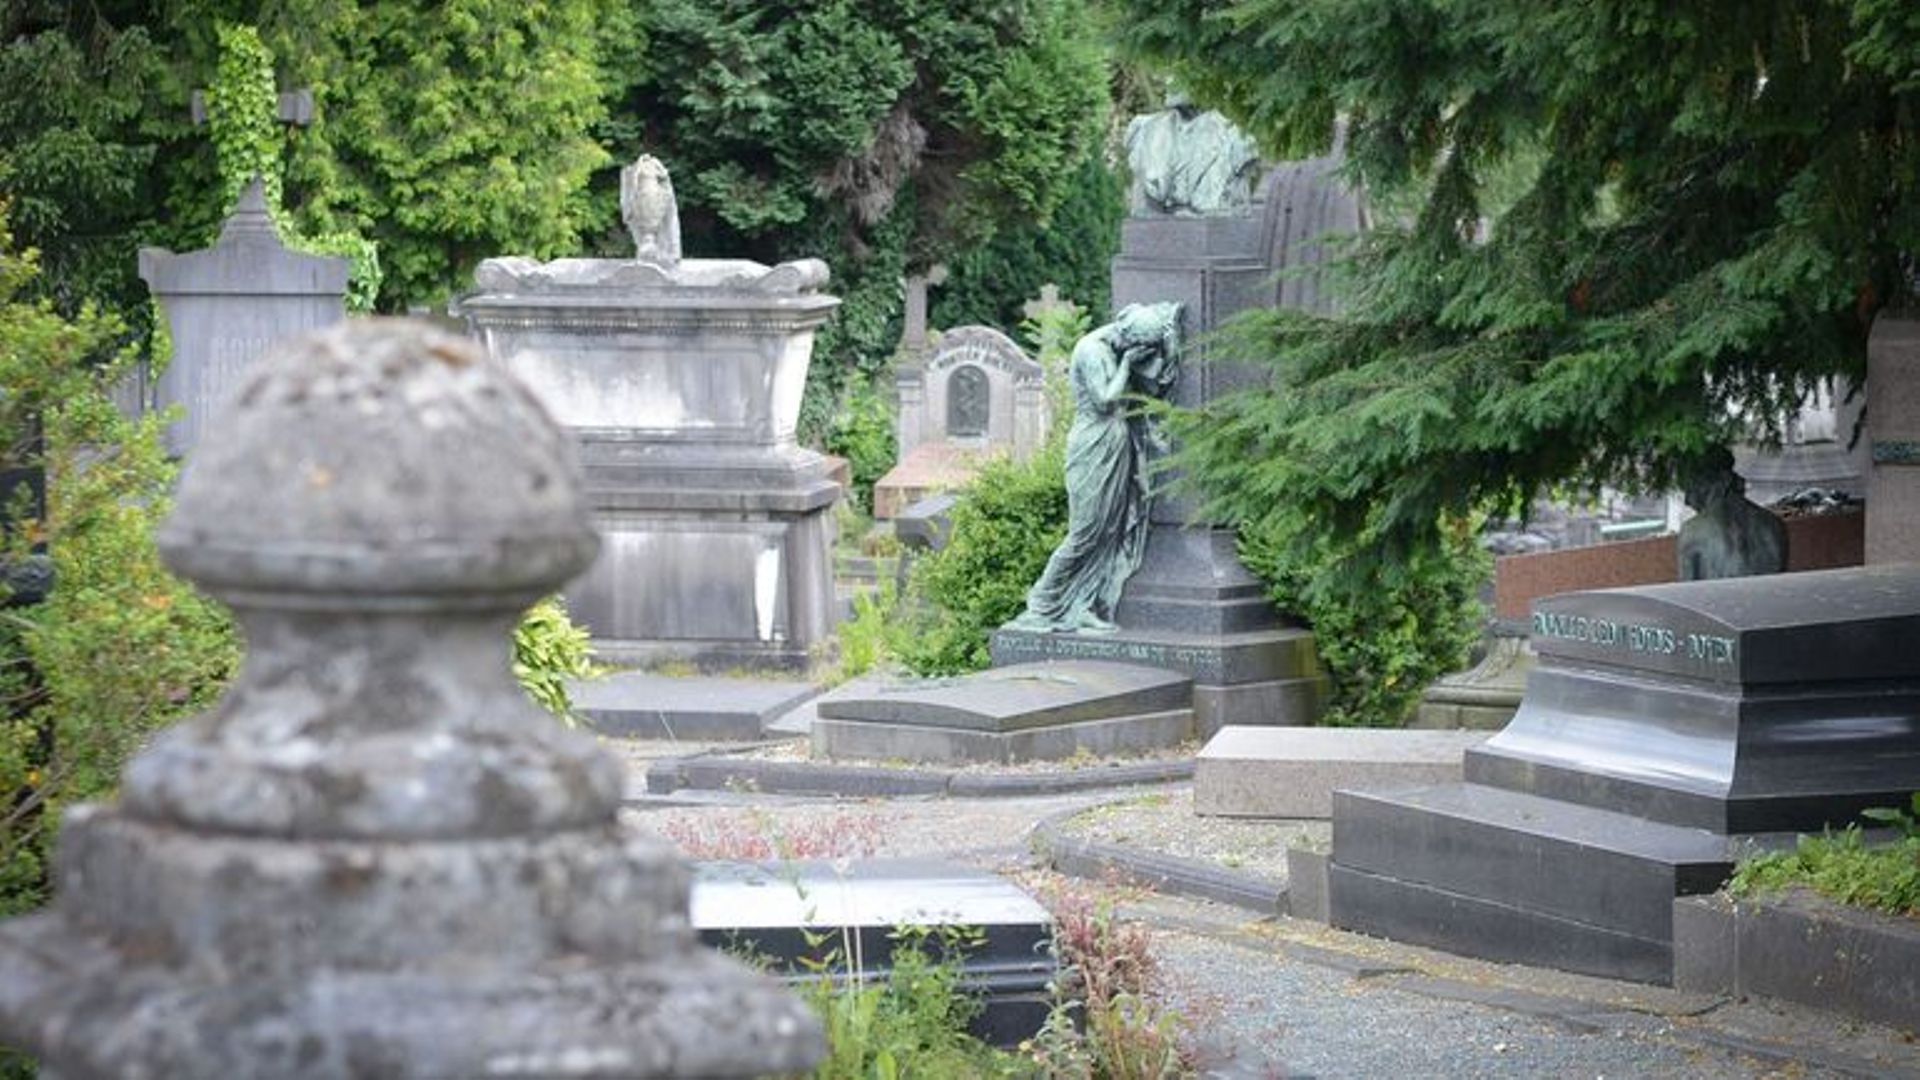 Le cimetière de Laeken, le plus vieux cimetière de la région bruxelloise.